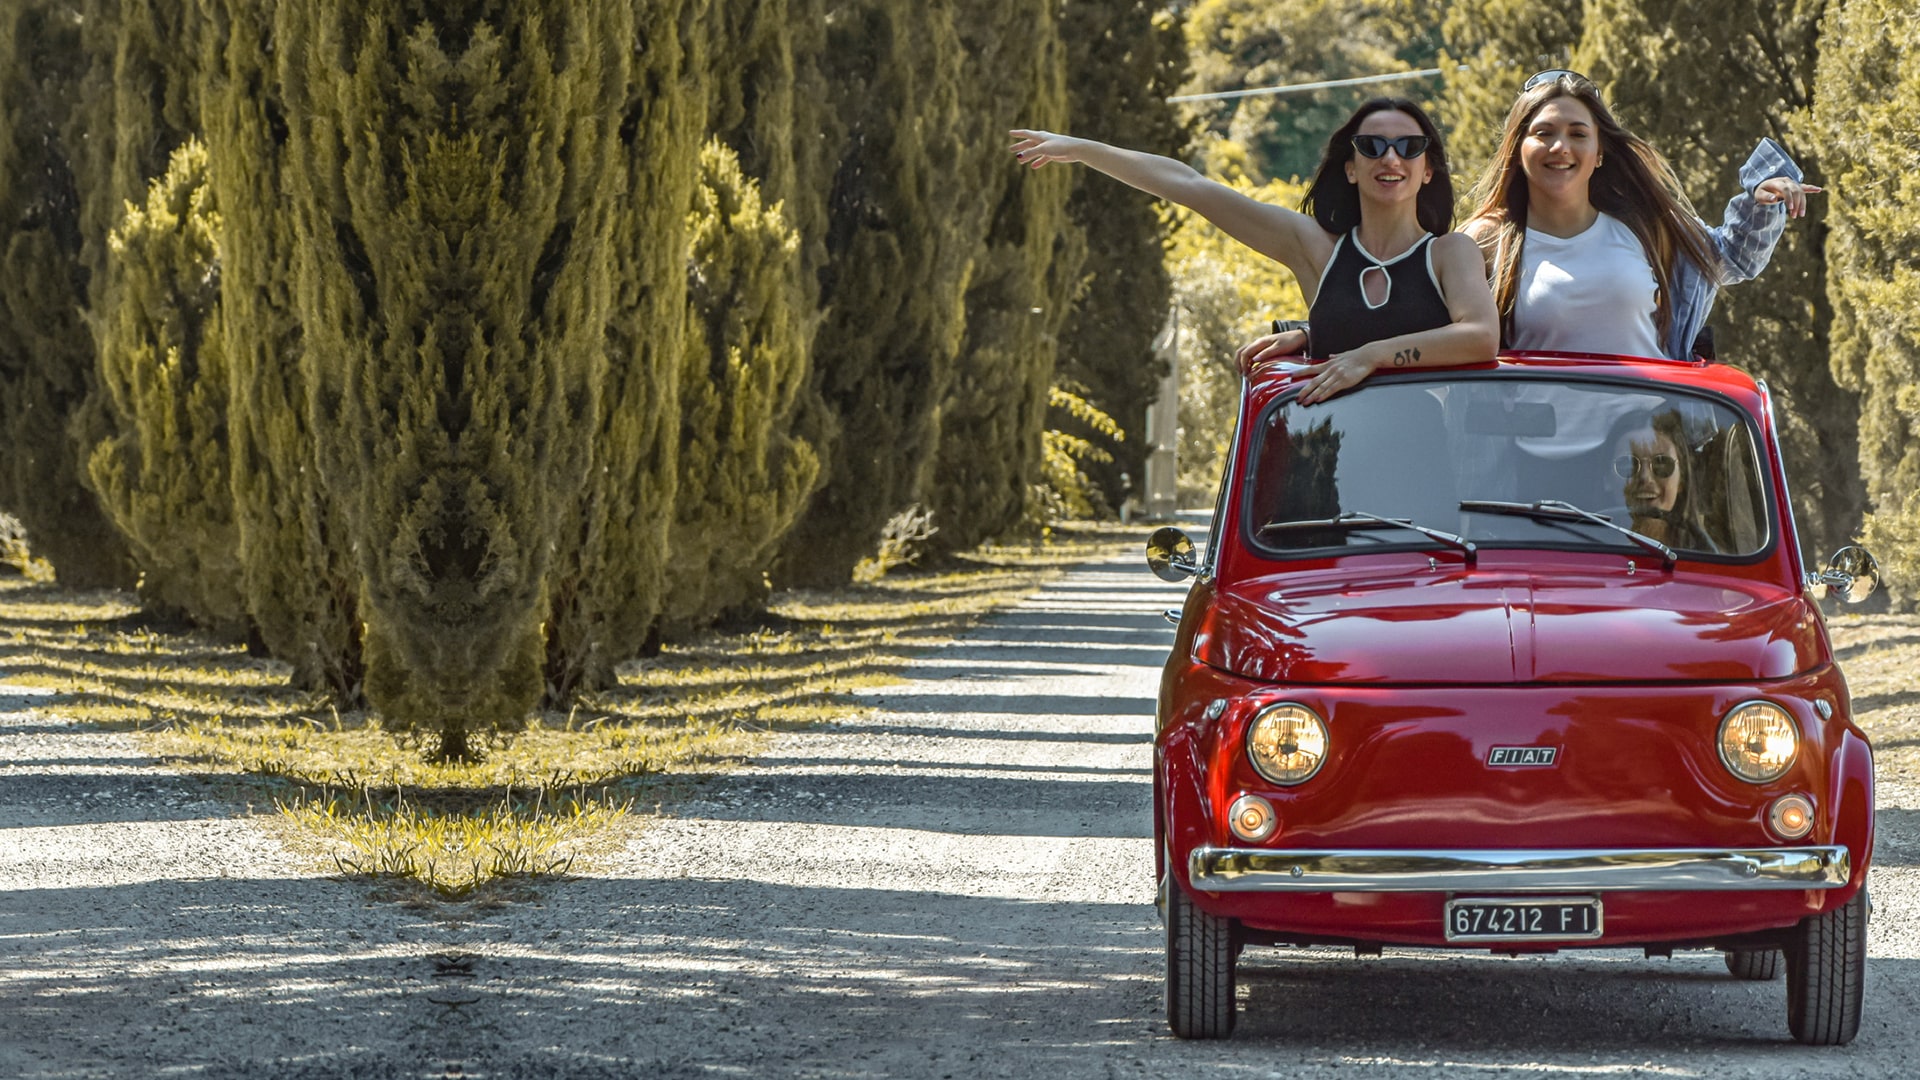 Noleggio Fiat 500 d'epoca per esplorare campagna Toscana e vigneti suggestivi di San Miniato